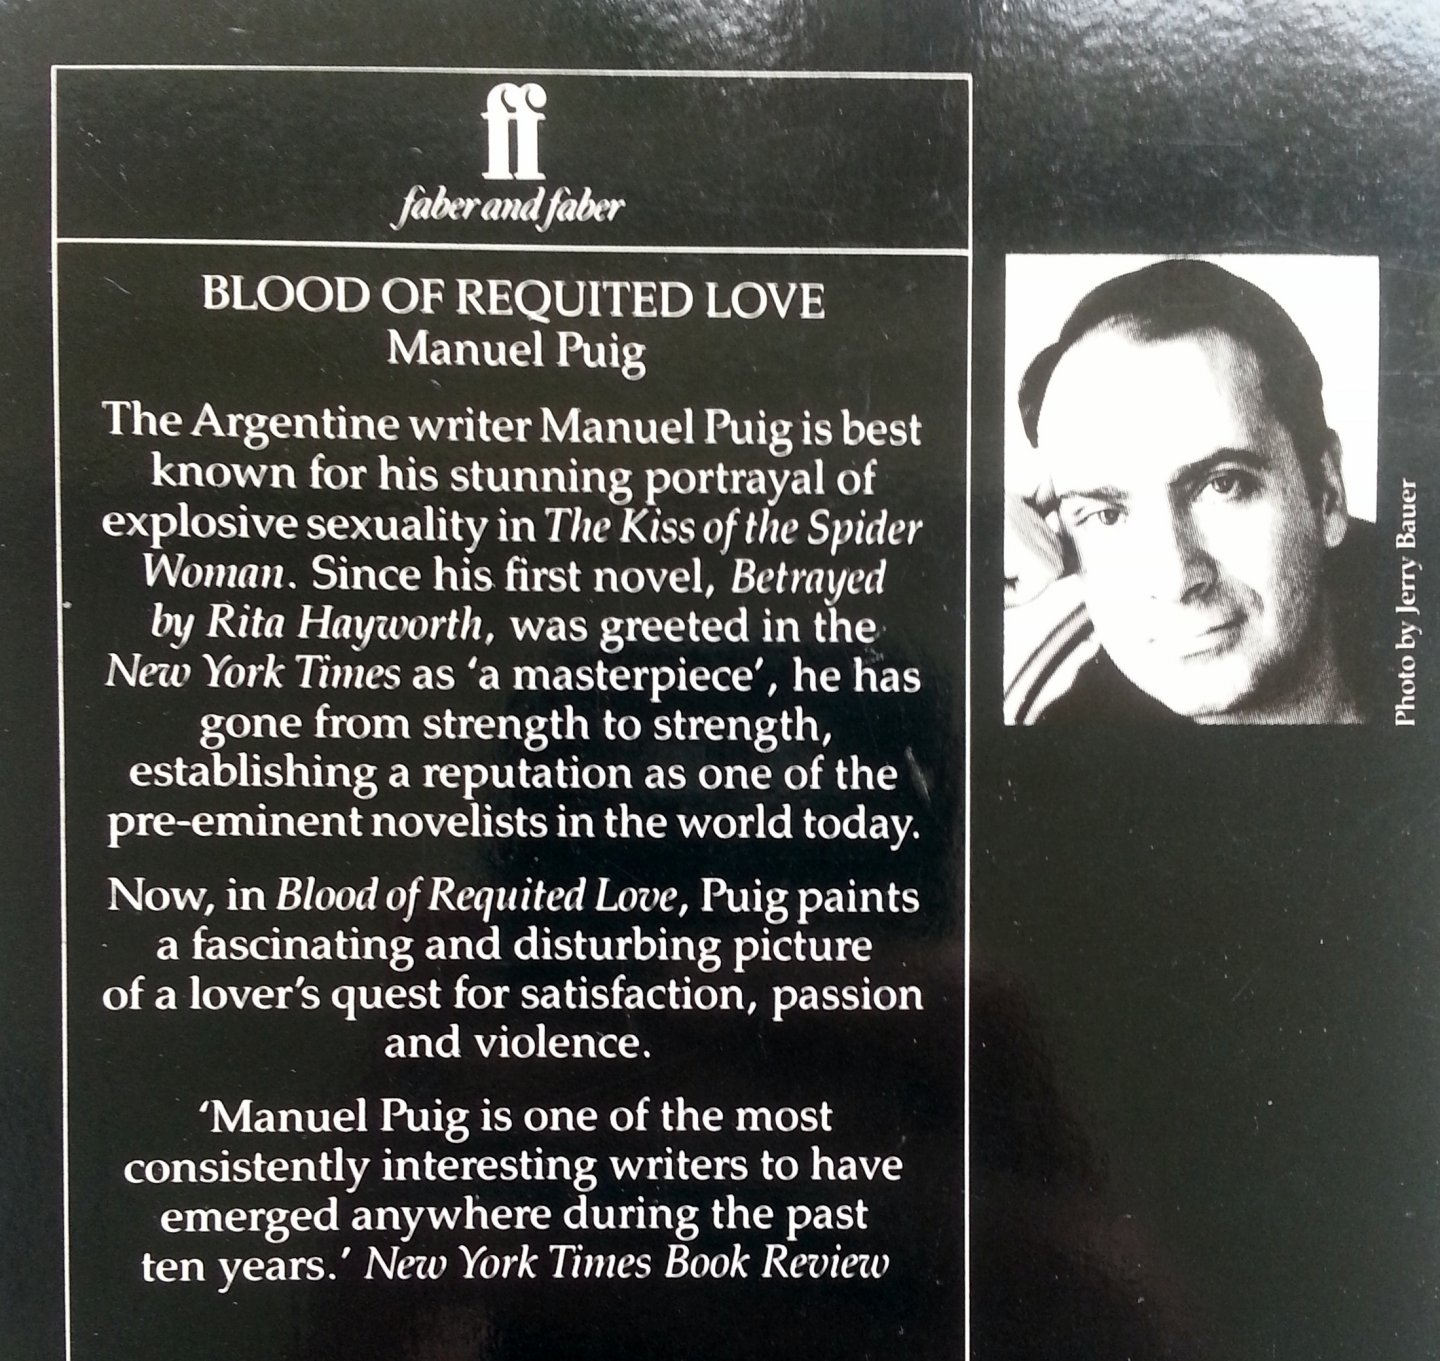 Puig, Manuel - Blood of Requitted Love (ENGELSTALIG)